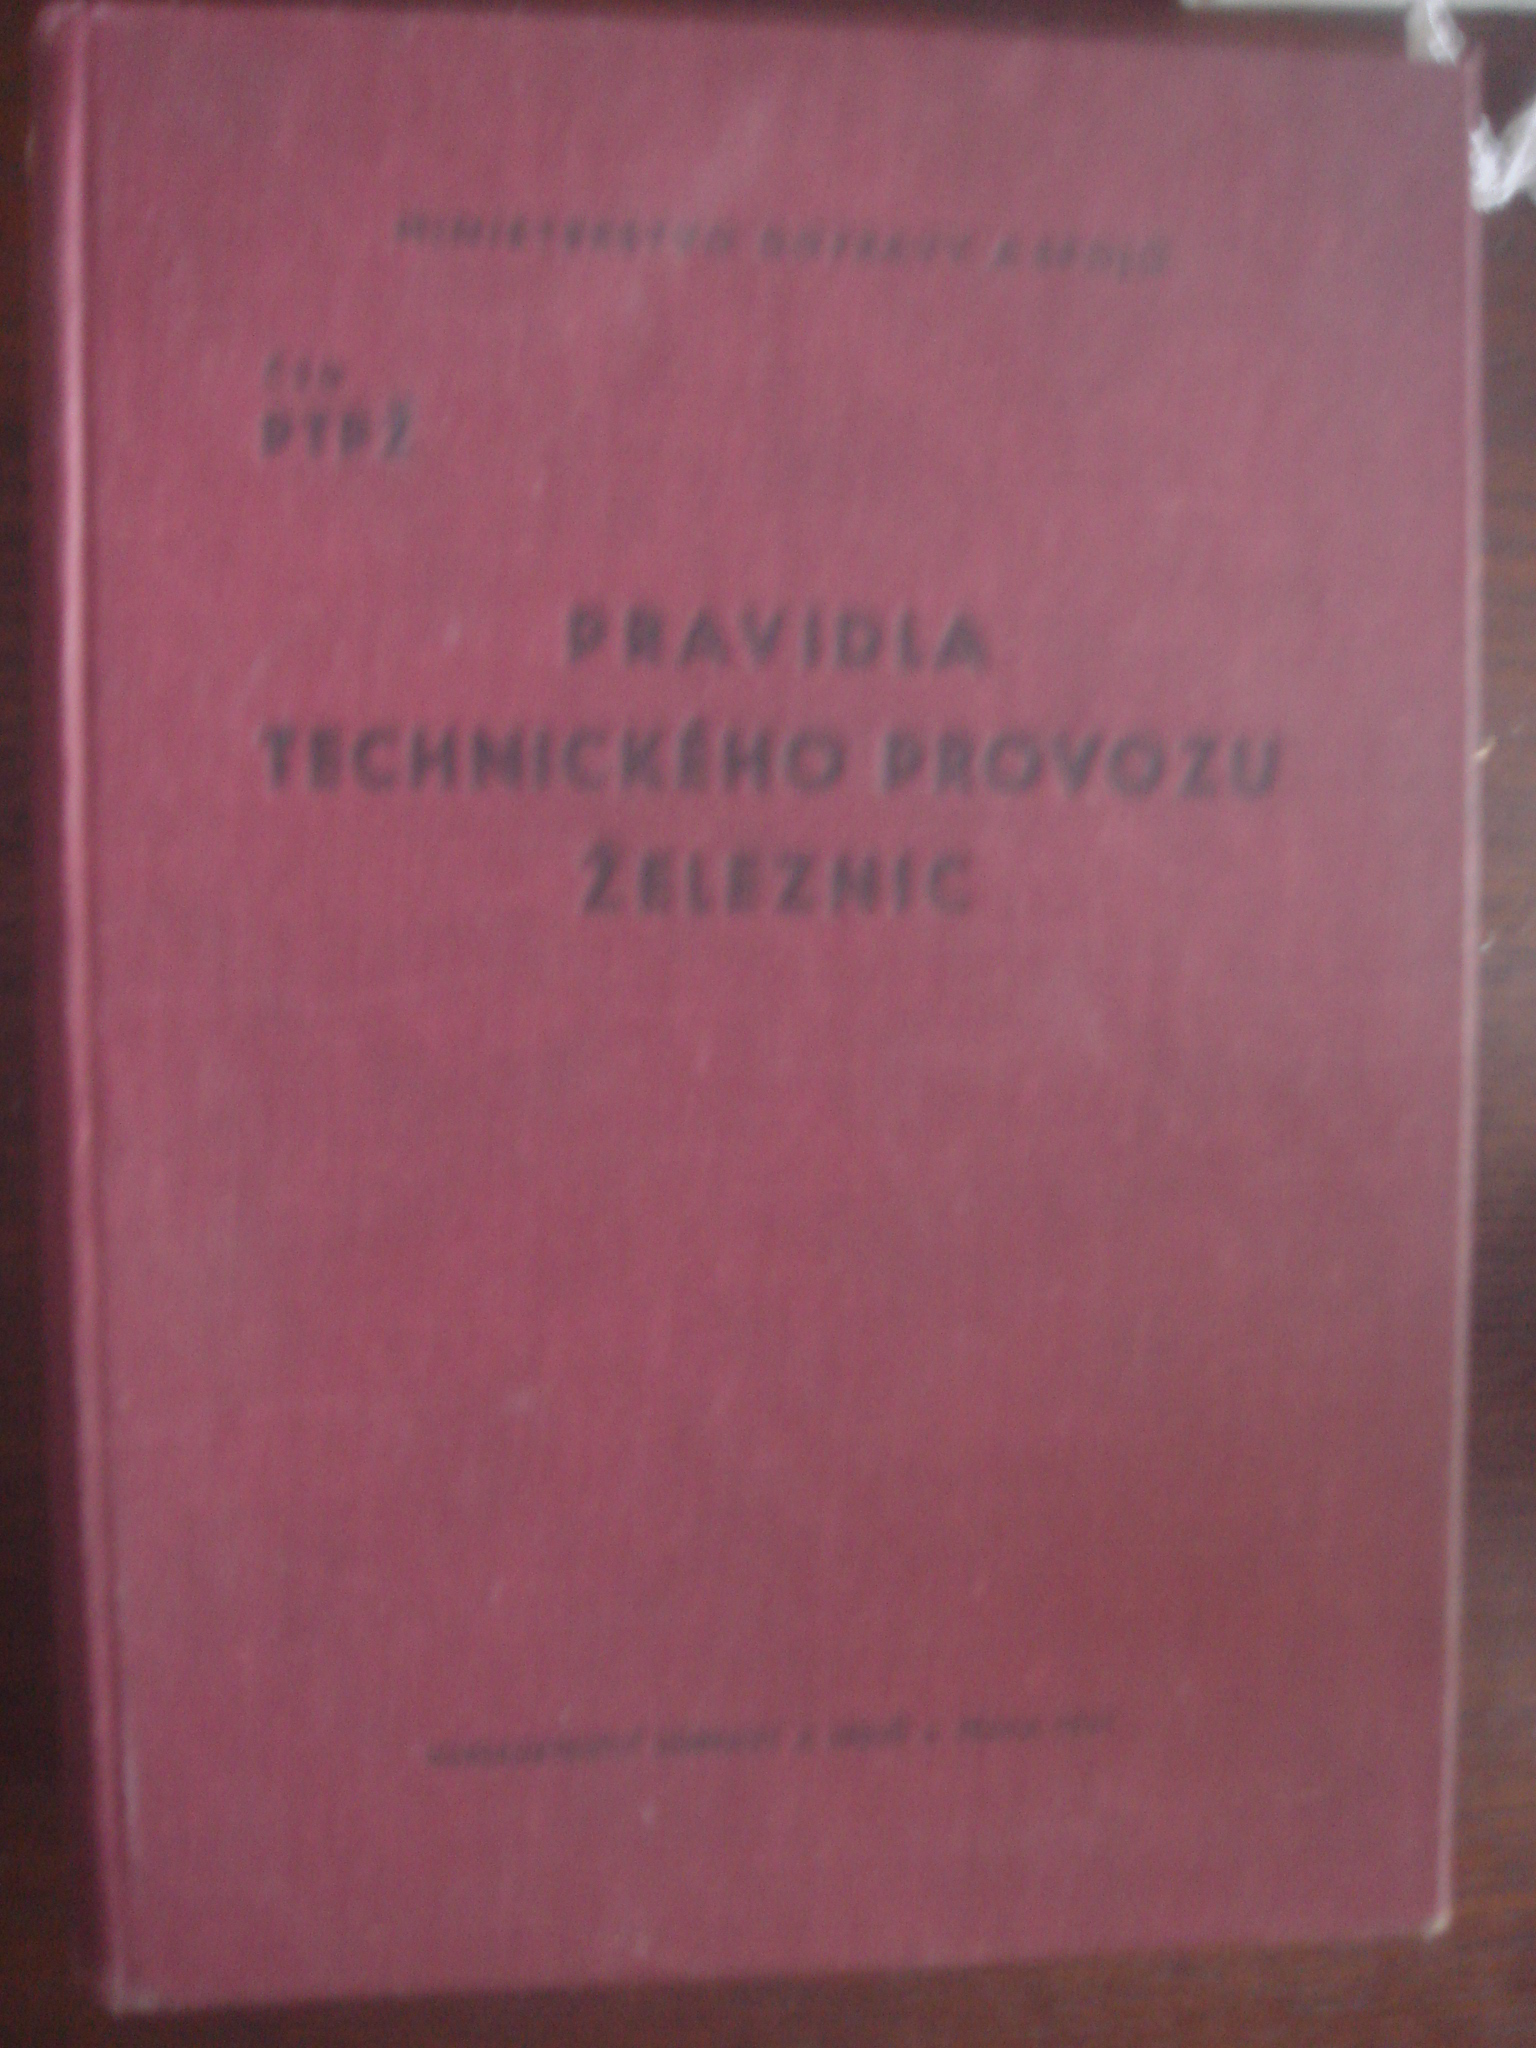 zobrazit detail knihy Pravidla technickho provozu eleznic 1961